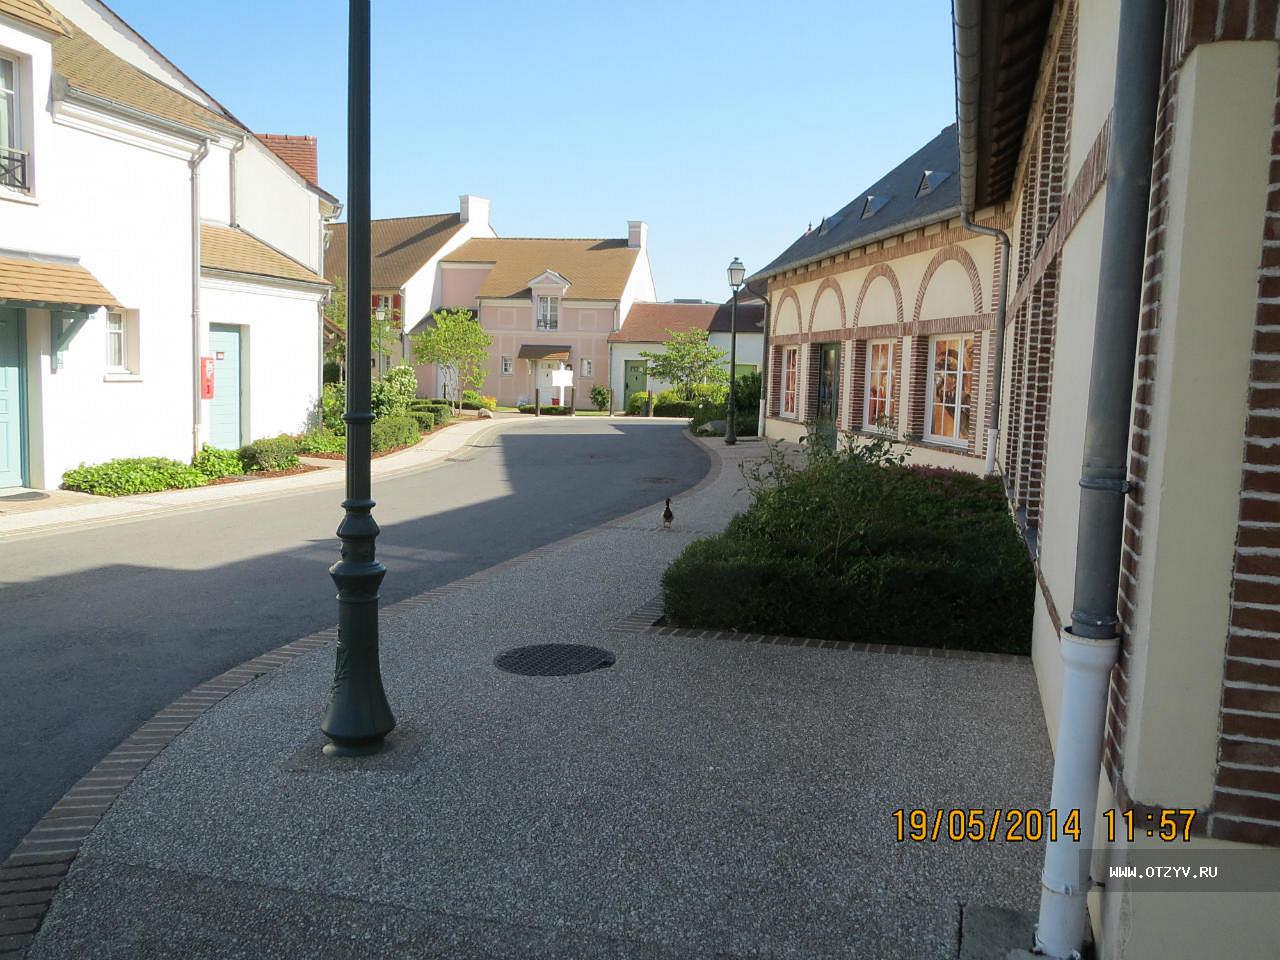 Marriott's Village d'Ile-de-France